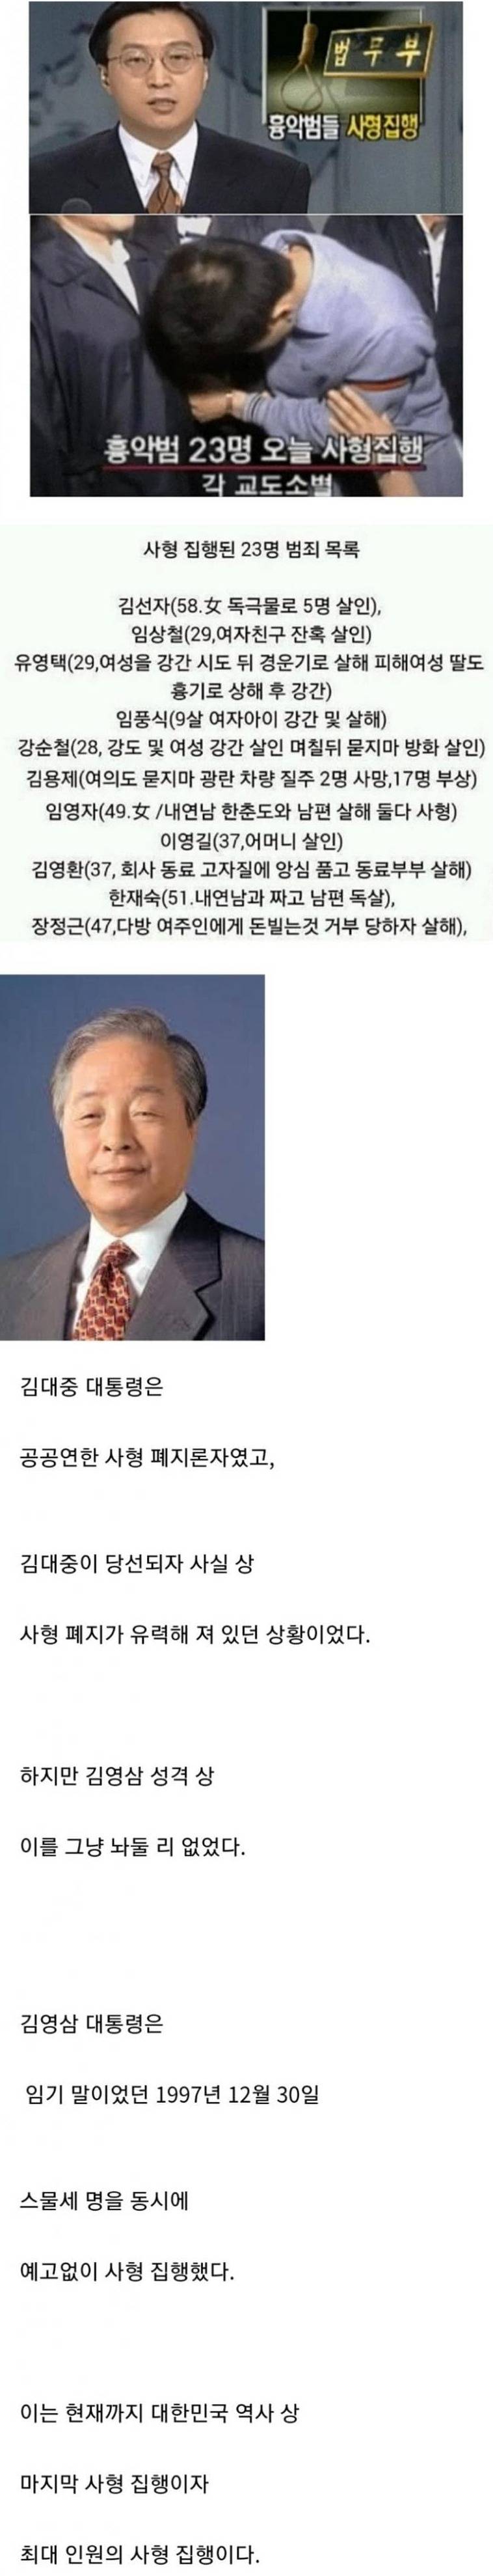 한국의 마지막 사형 집행